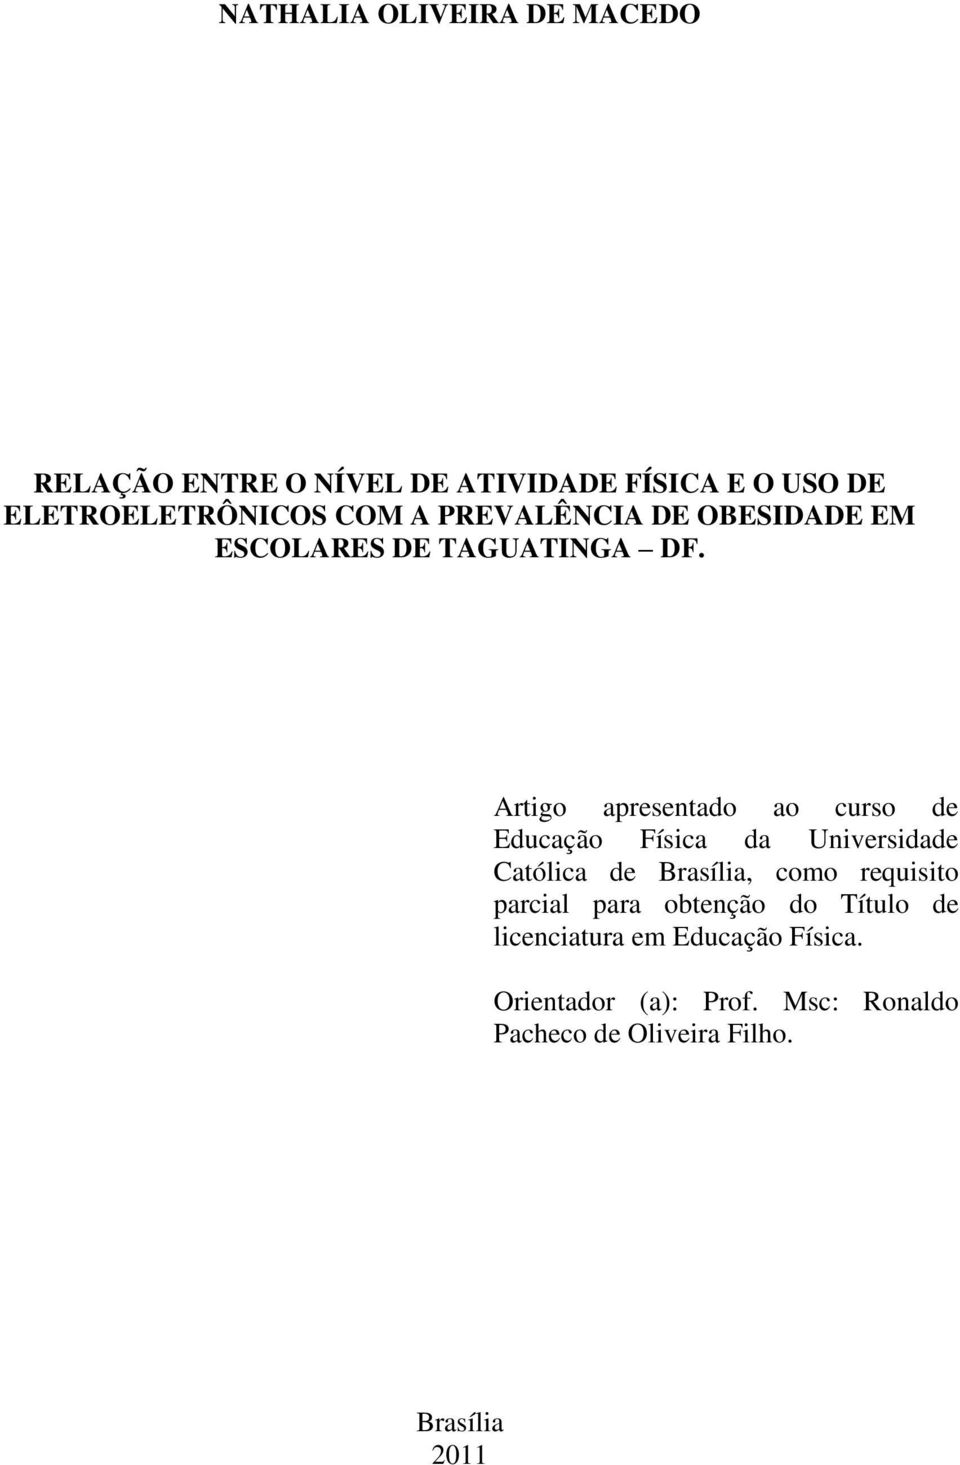 Artigo apresentado ao curso de Educação Física da Universidade Católica de Brasília, como requisito